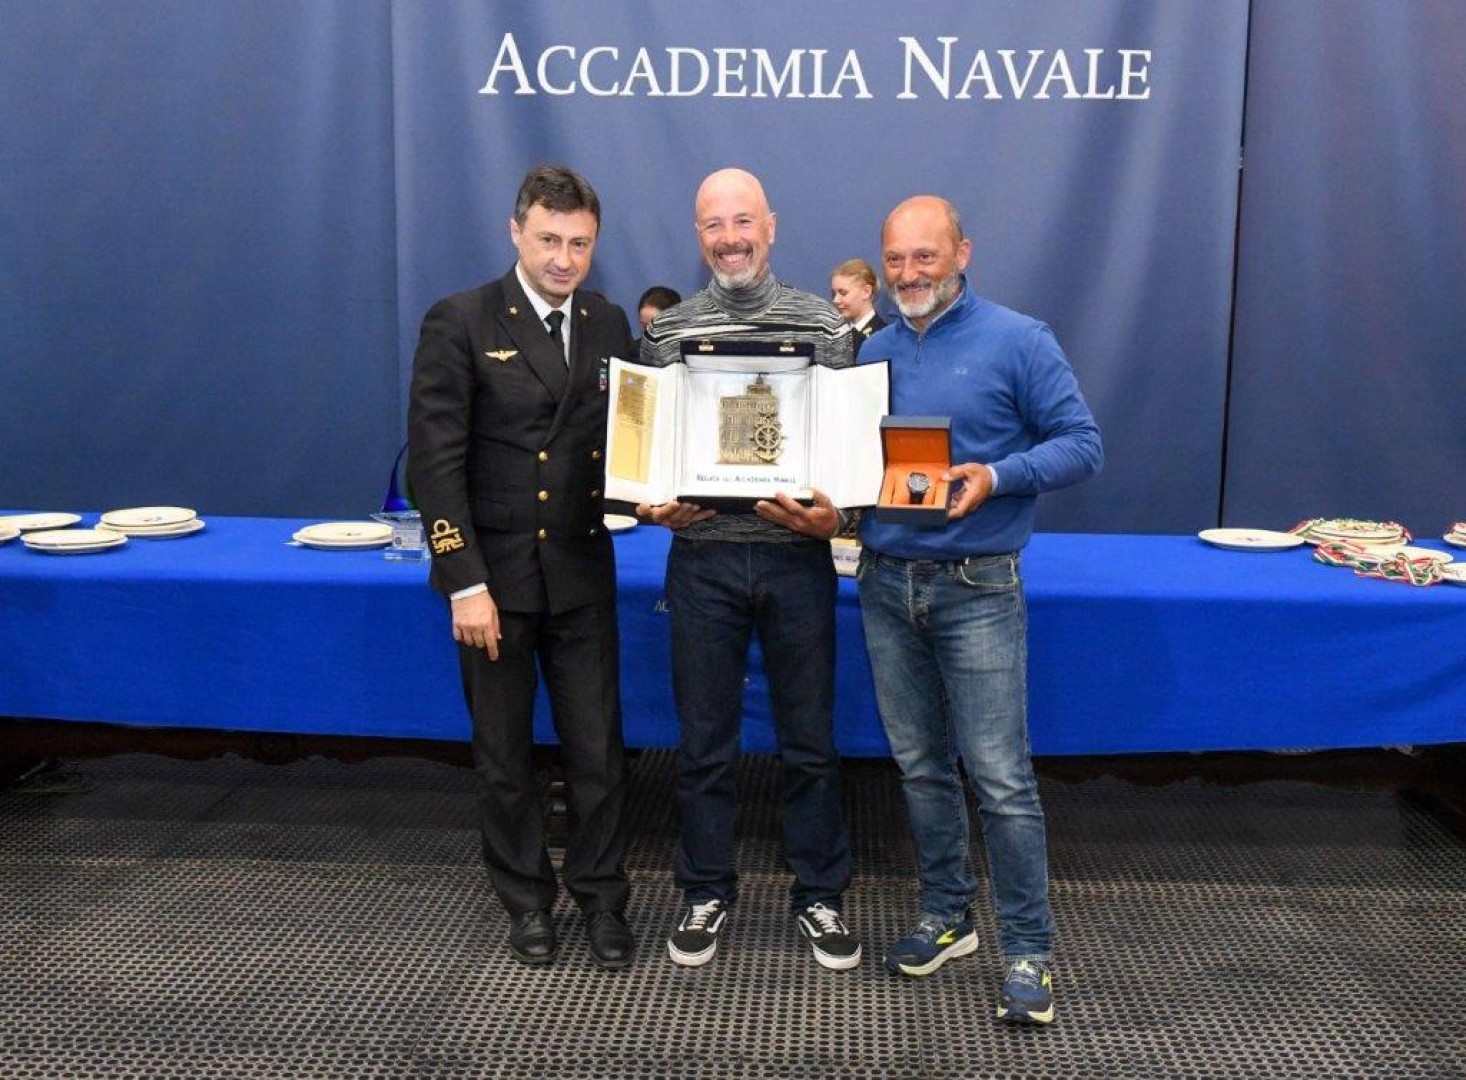 L'Ammiraglio Comandante l'Accademia Navale, Lorenzano Di Renzo consegna il Trofeo Challenge della RAN 630 all'equipaggio in doppio di Lunatika